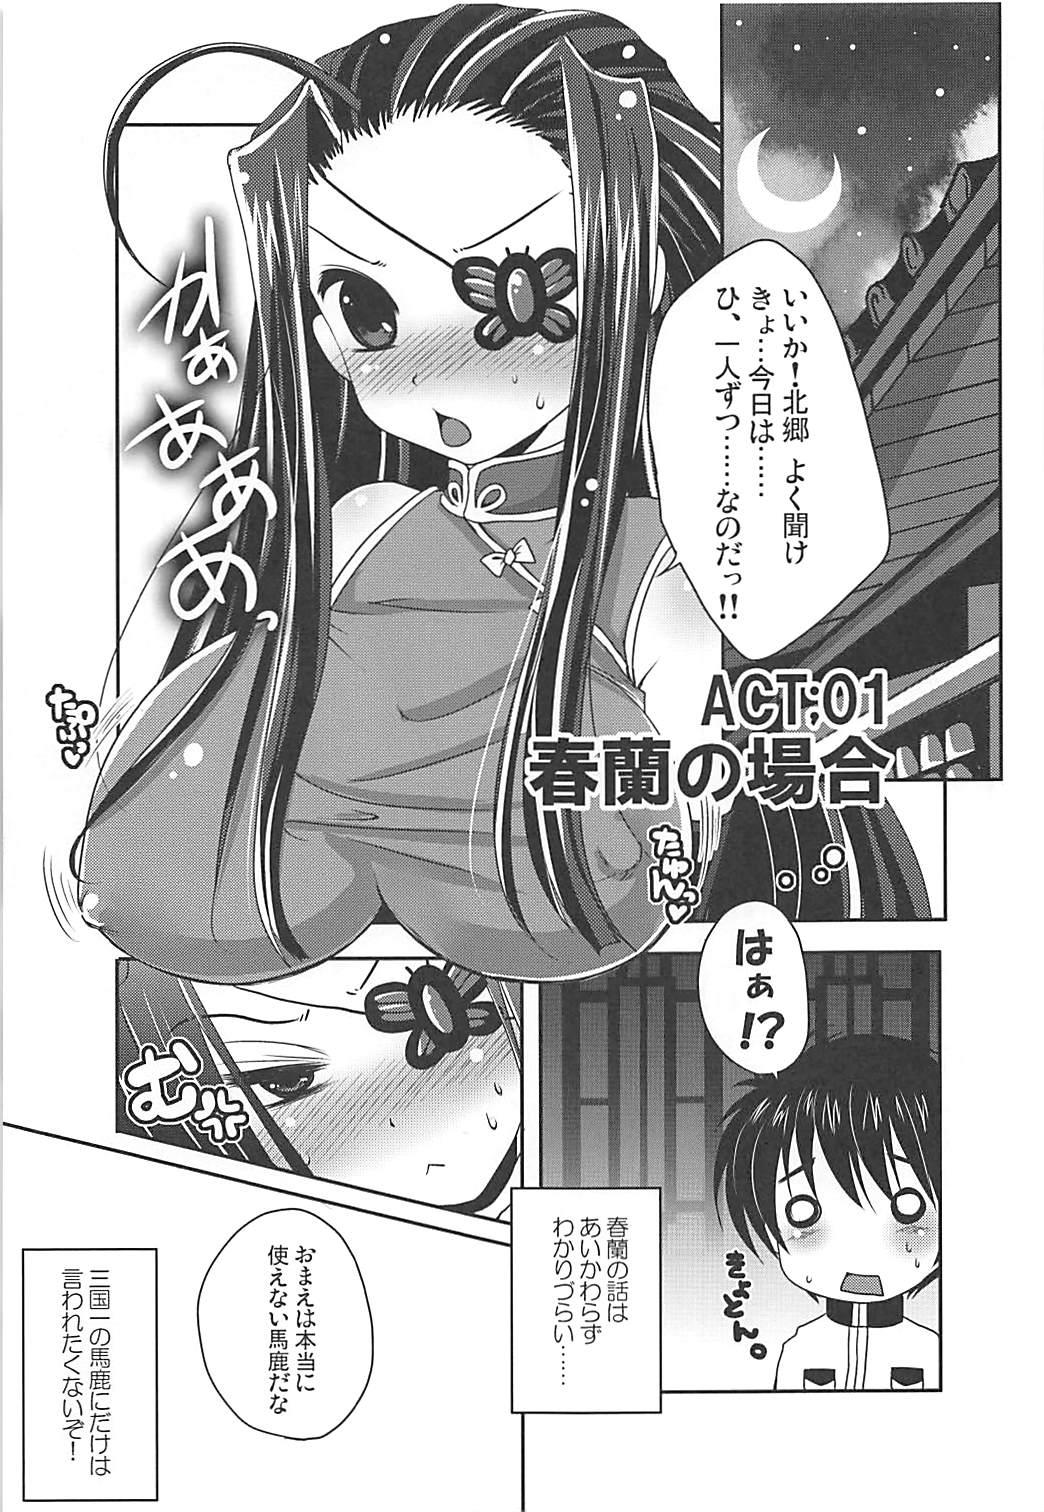 Mulher Tamani wa Hitori zutsu Aishite moraou ka - Koihime musou Heels - Page 4